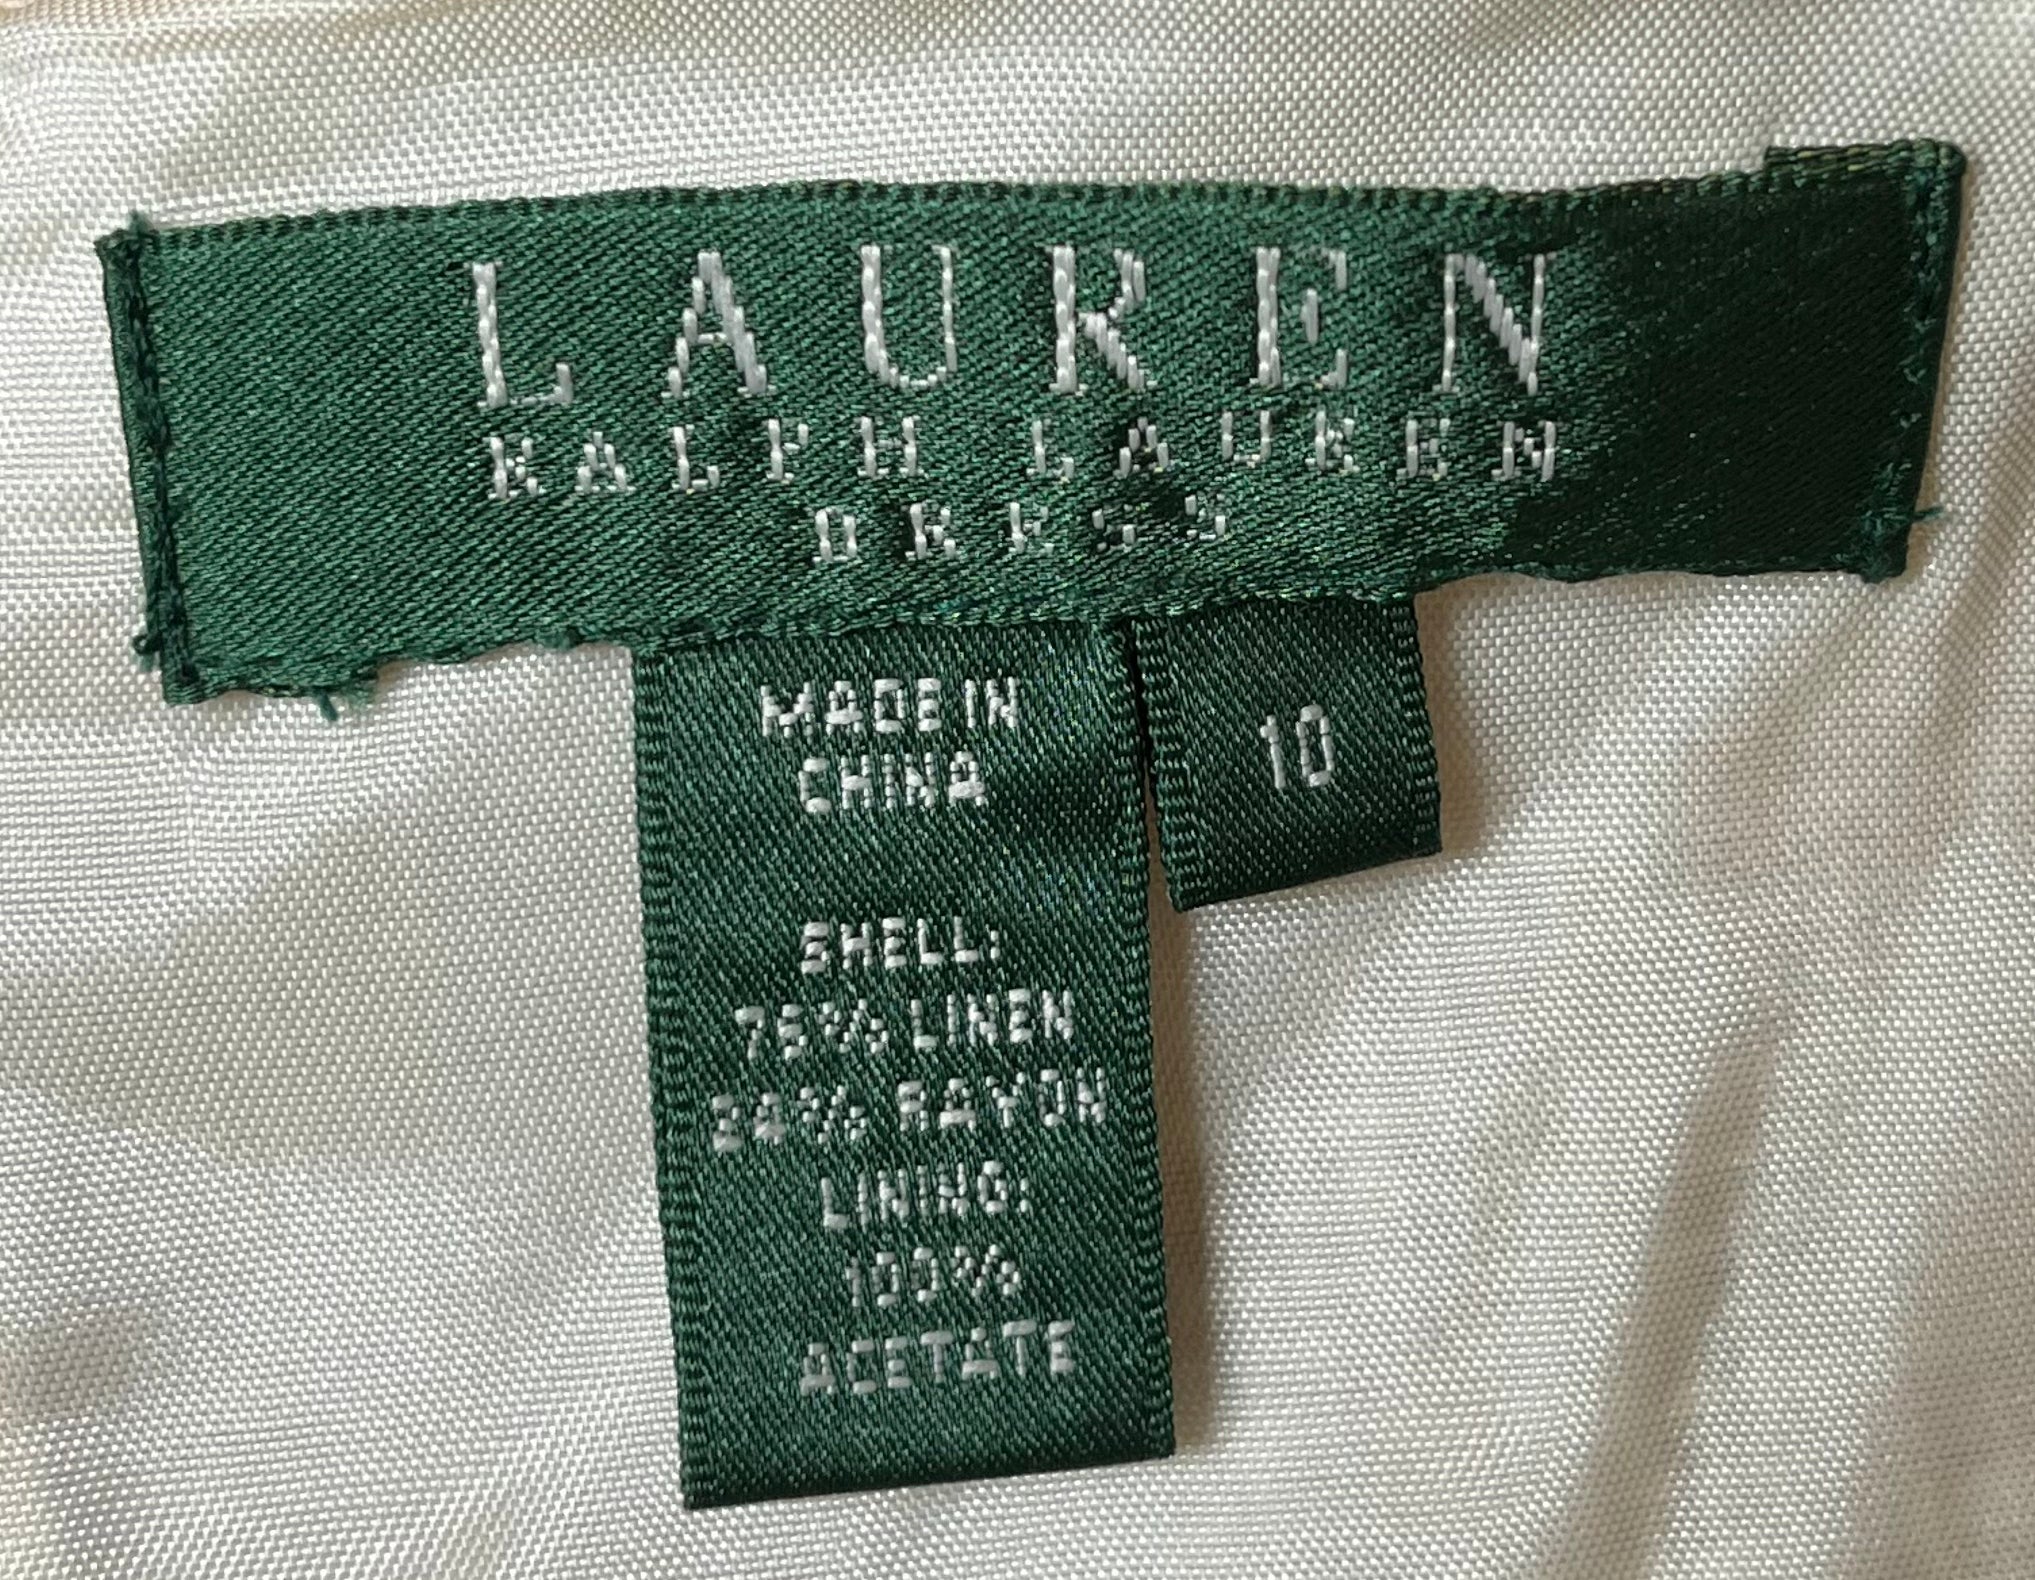 Lauren Ralph Lauren Tan/Gold Dress, Size: M